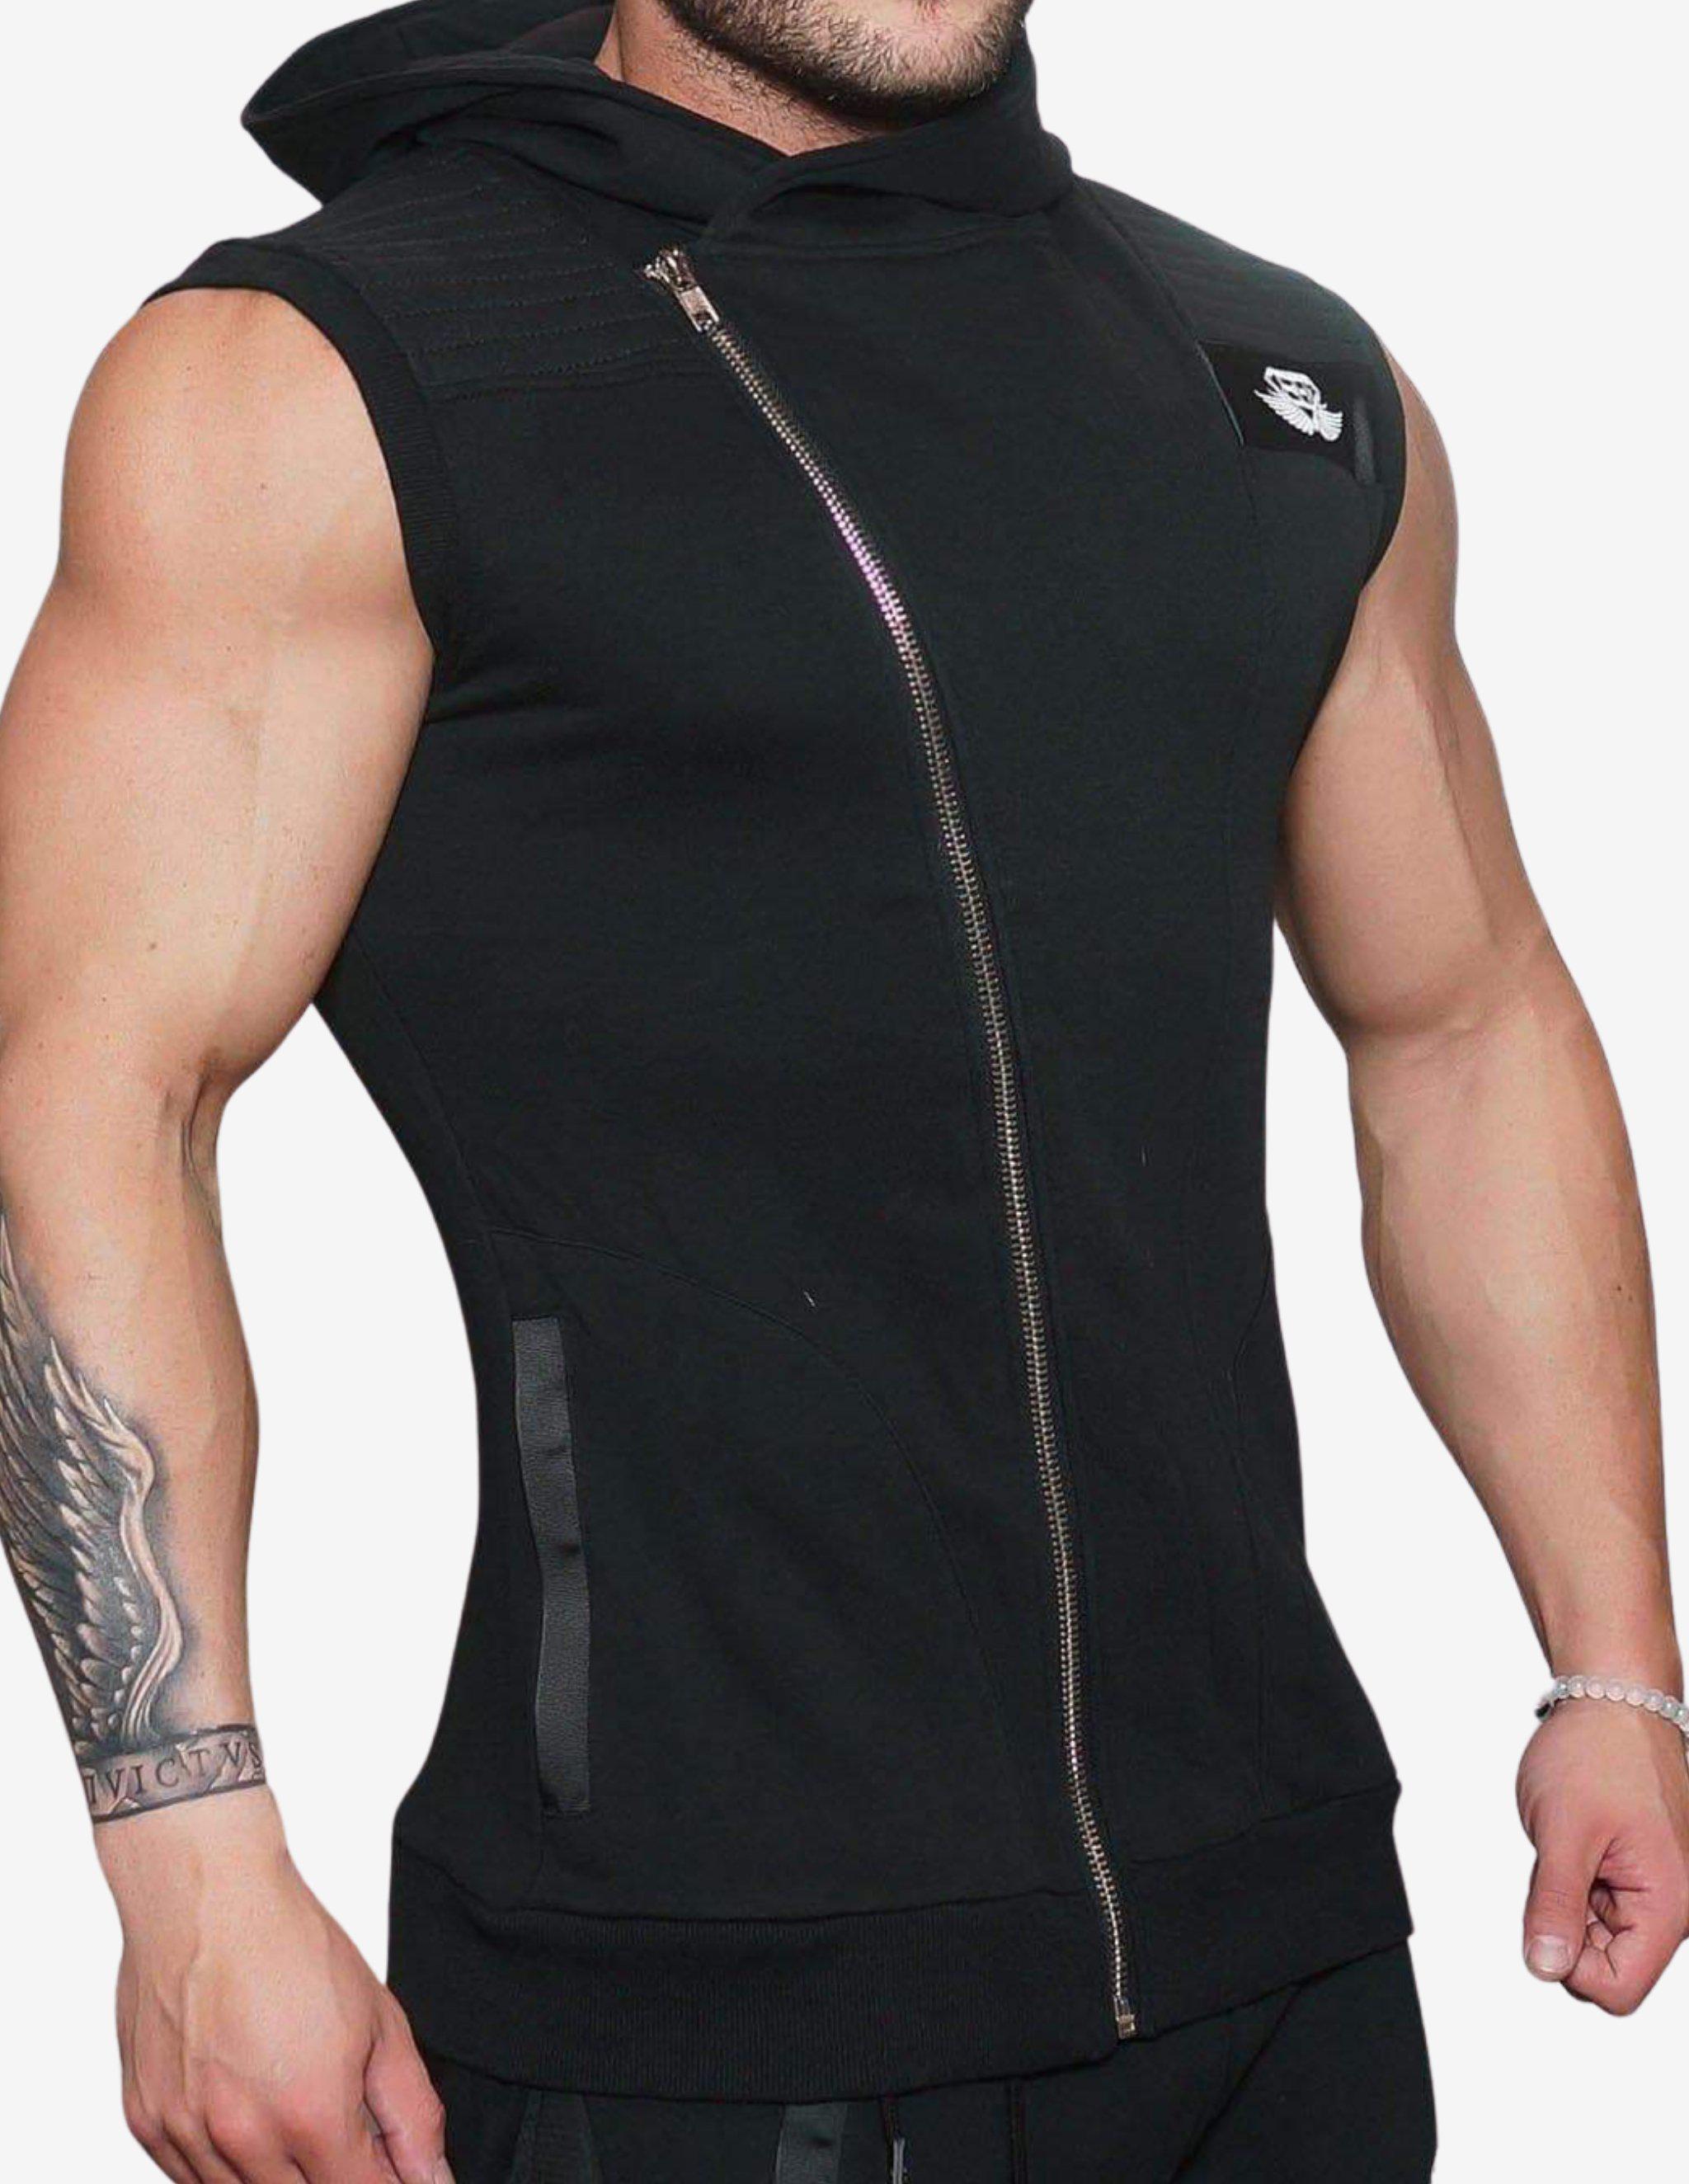 YUREI Sleeveless vest – ALL BLACK-Hoodie Man-Body Engineers-Guru Muscle